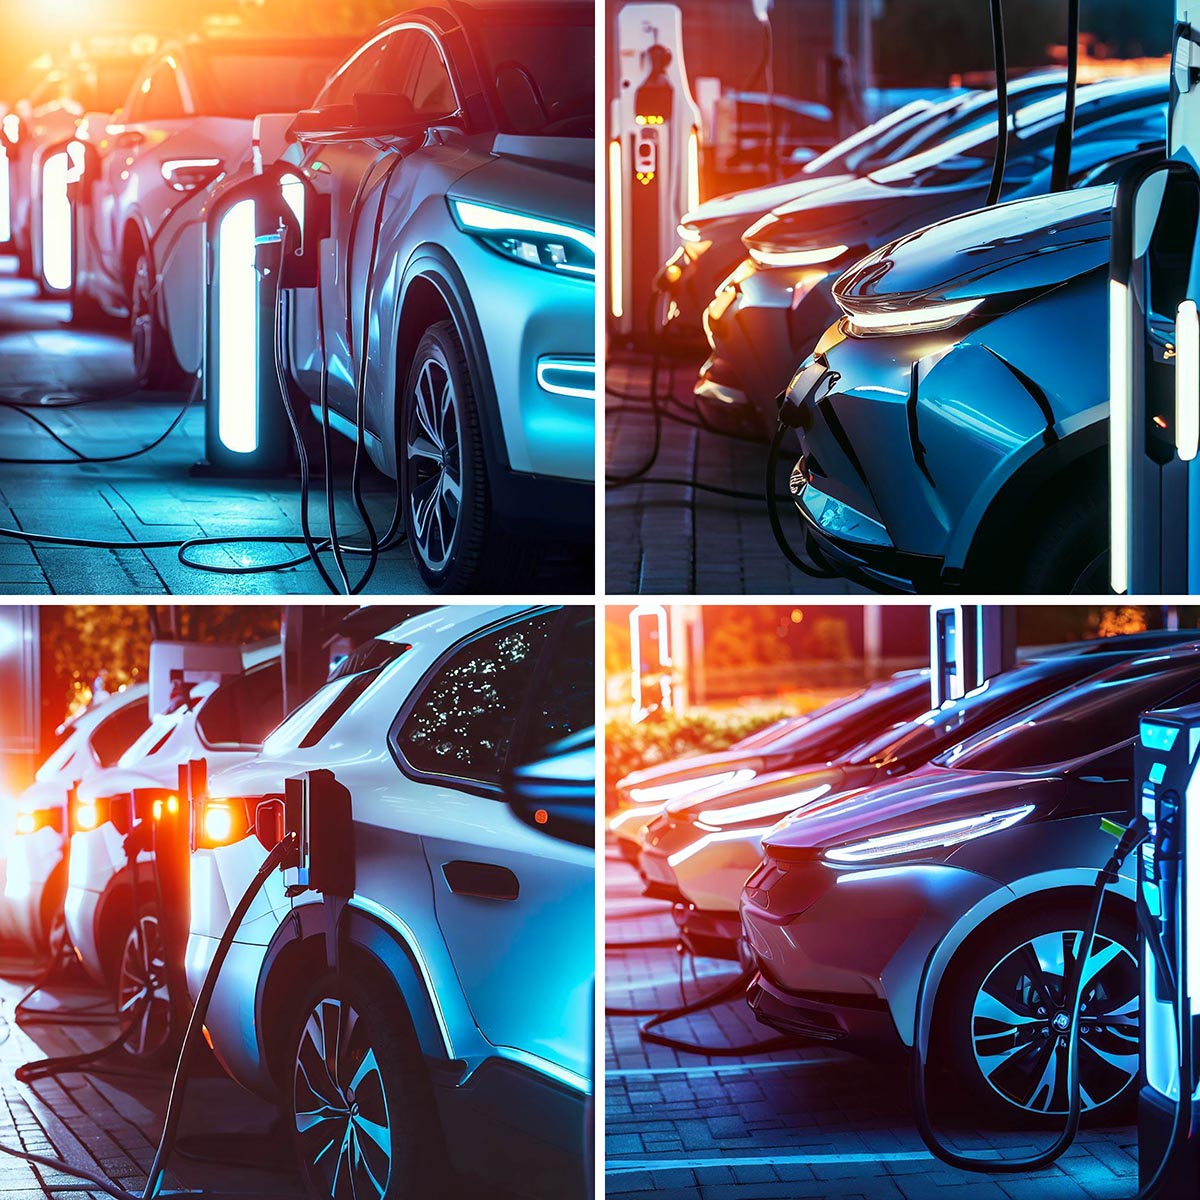 Images IA d'autos électriques à une station de recharge